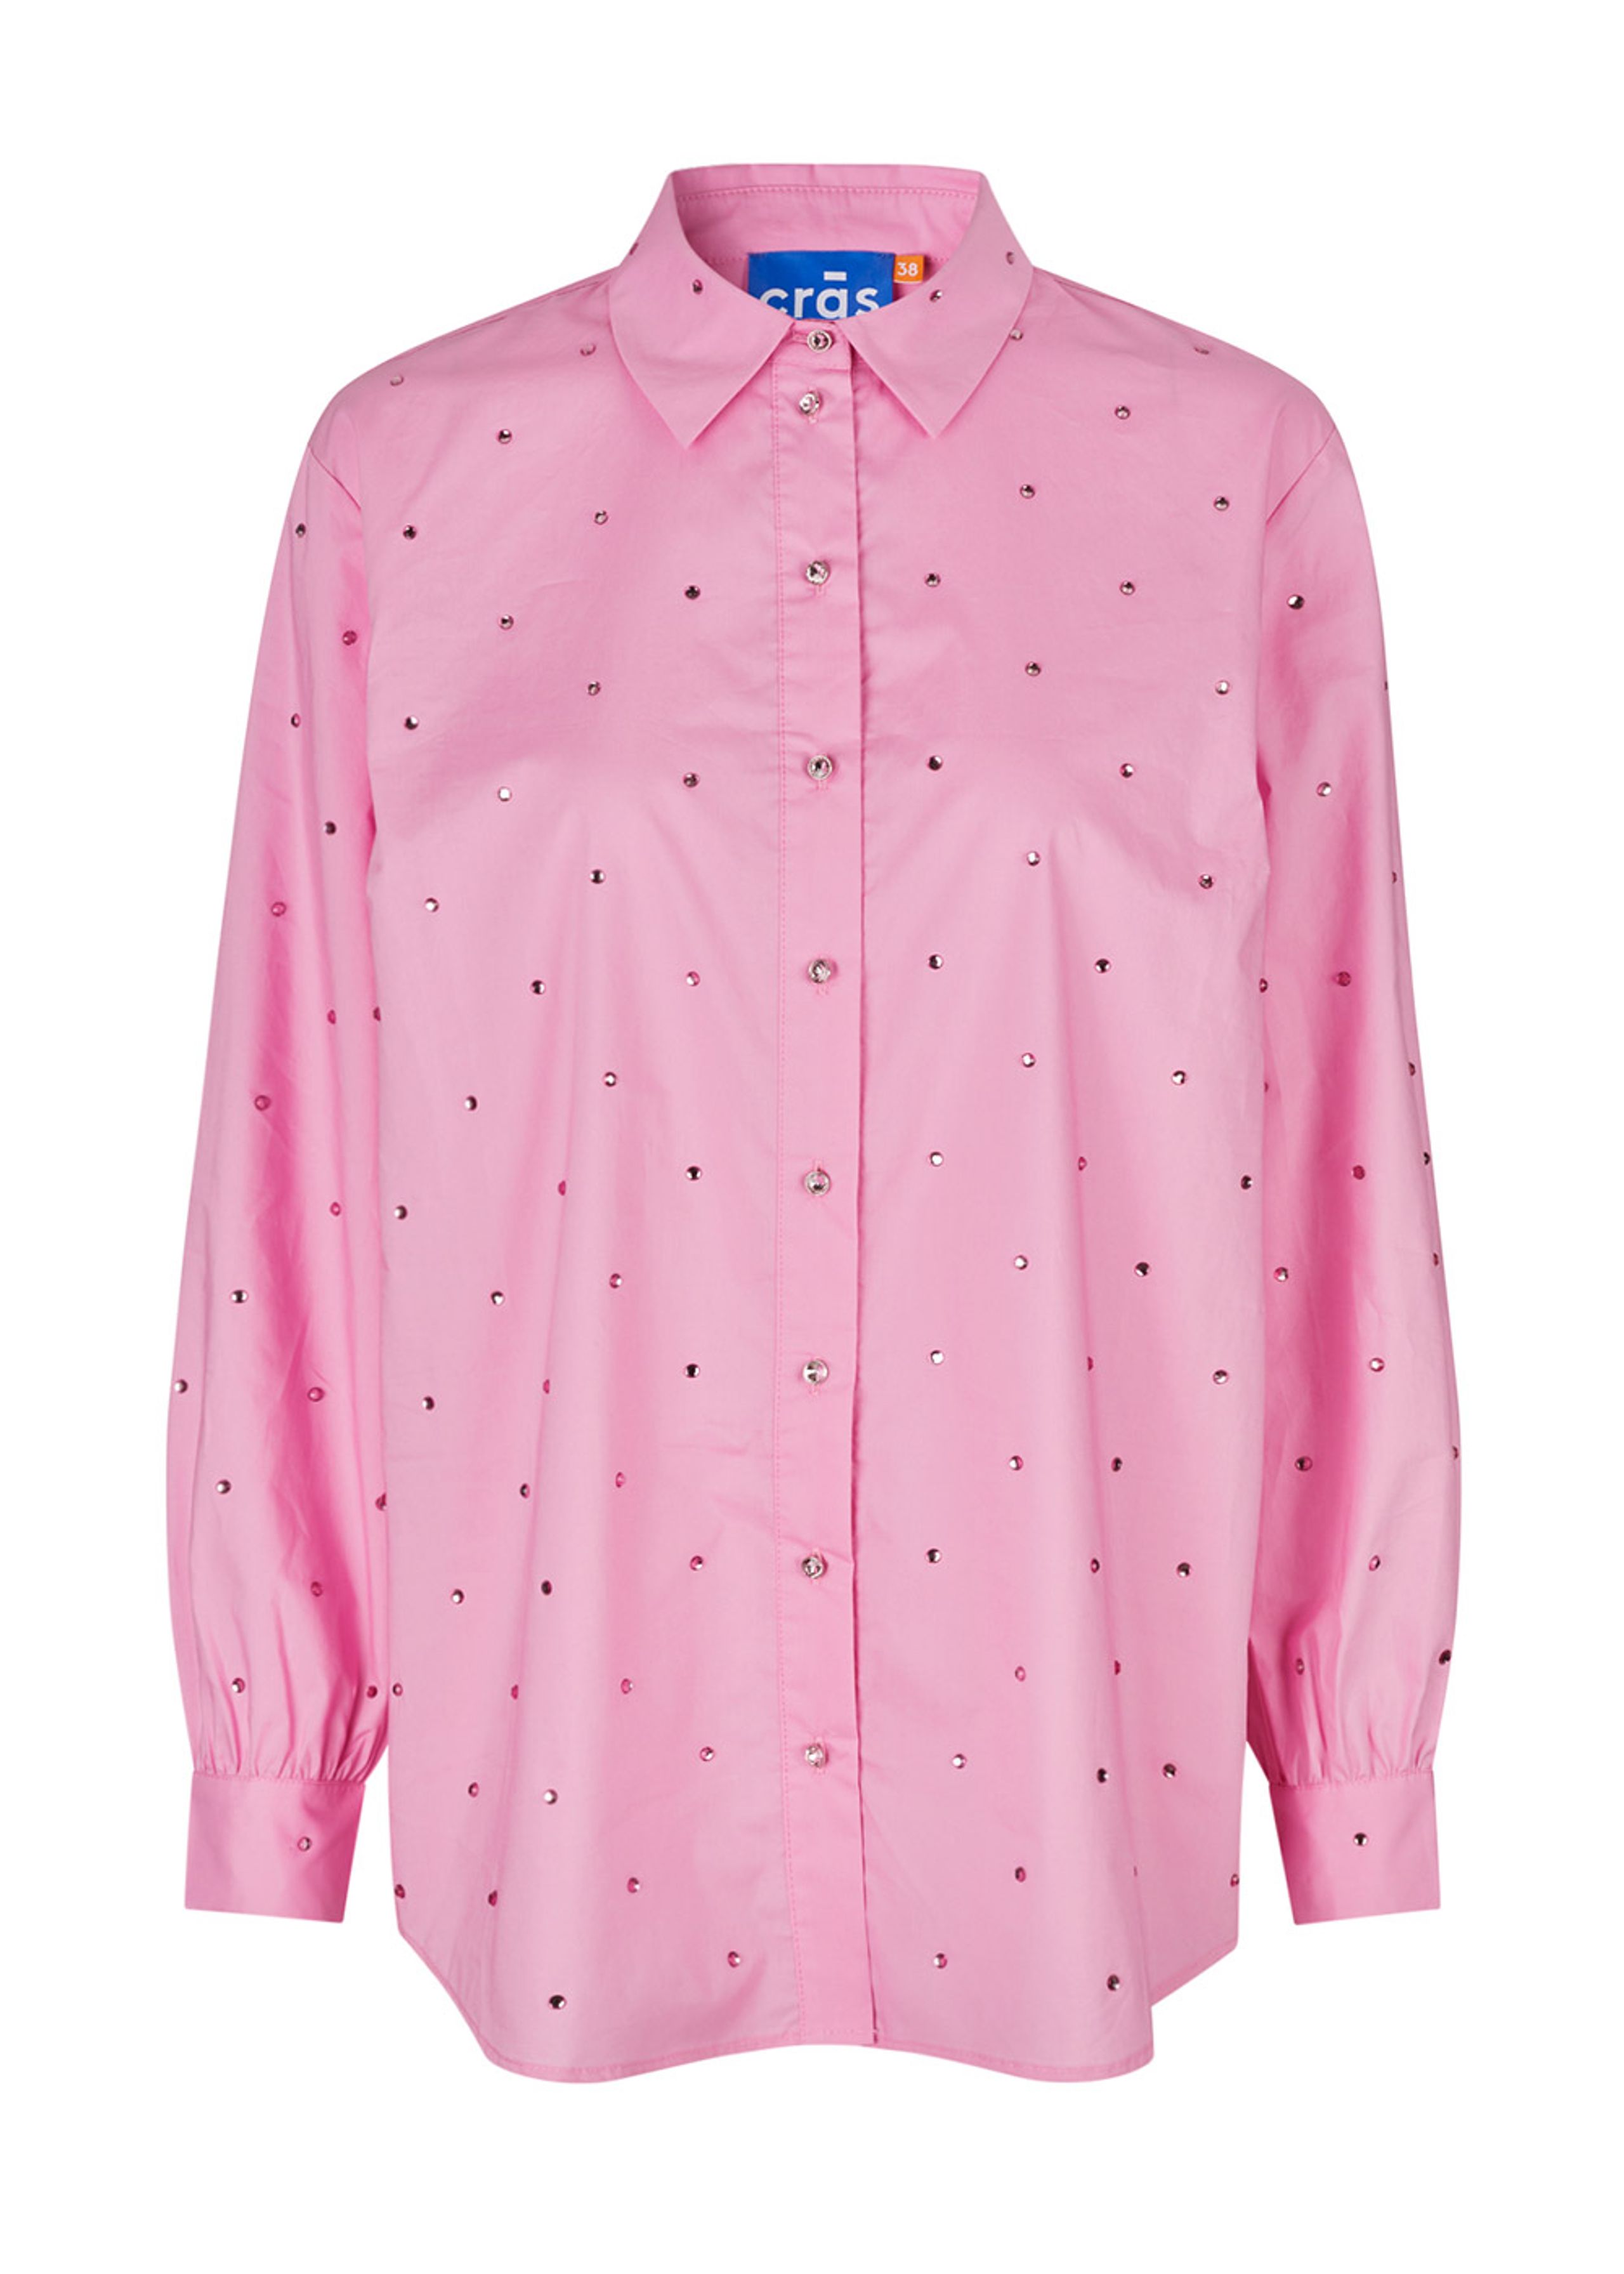 Cras - Camicia - Soficras Shirt - Pink